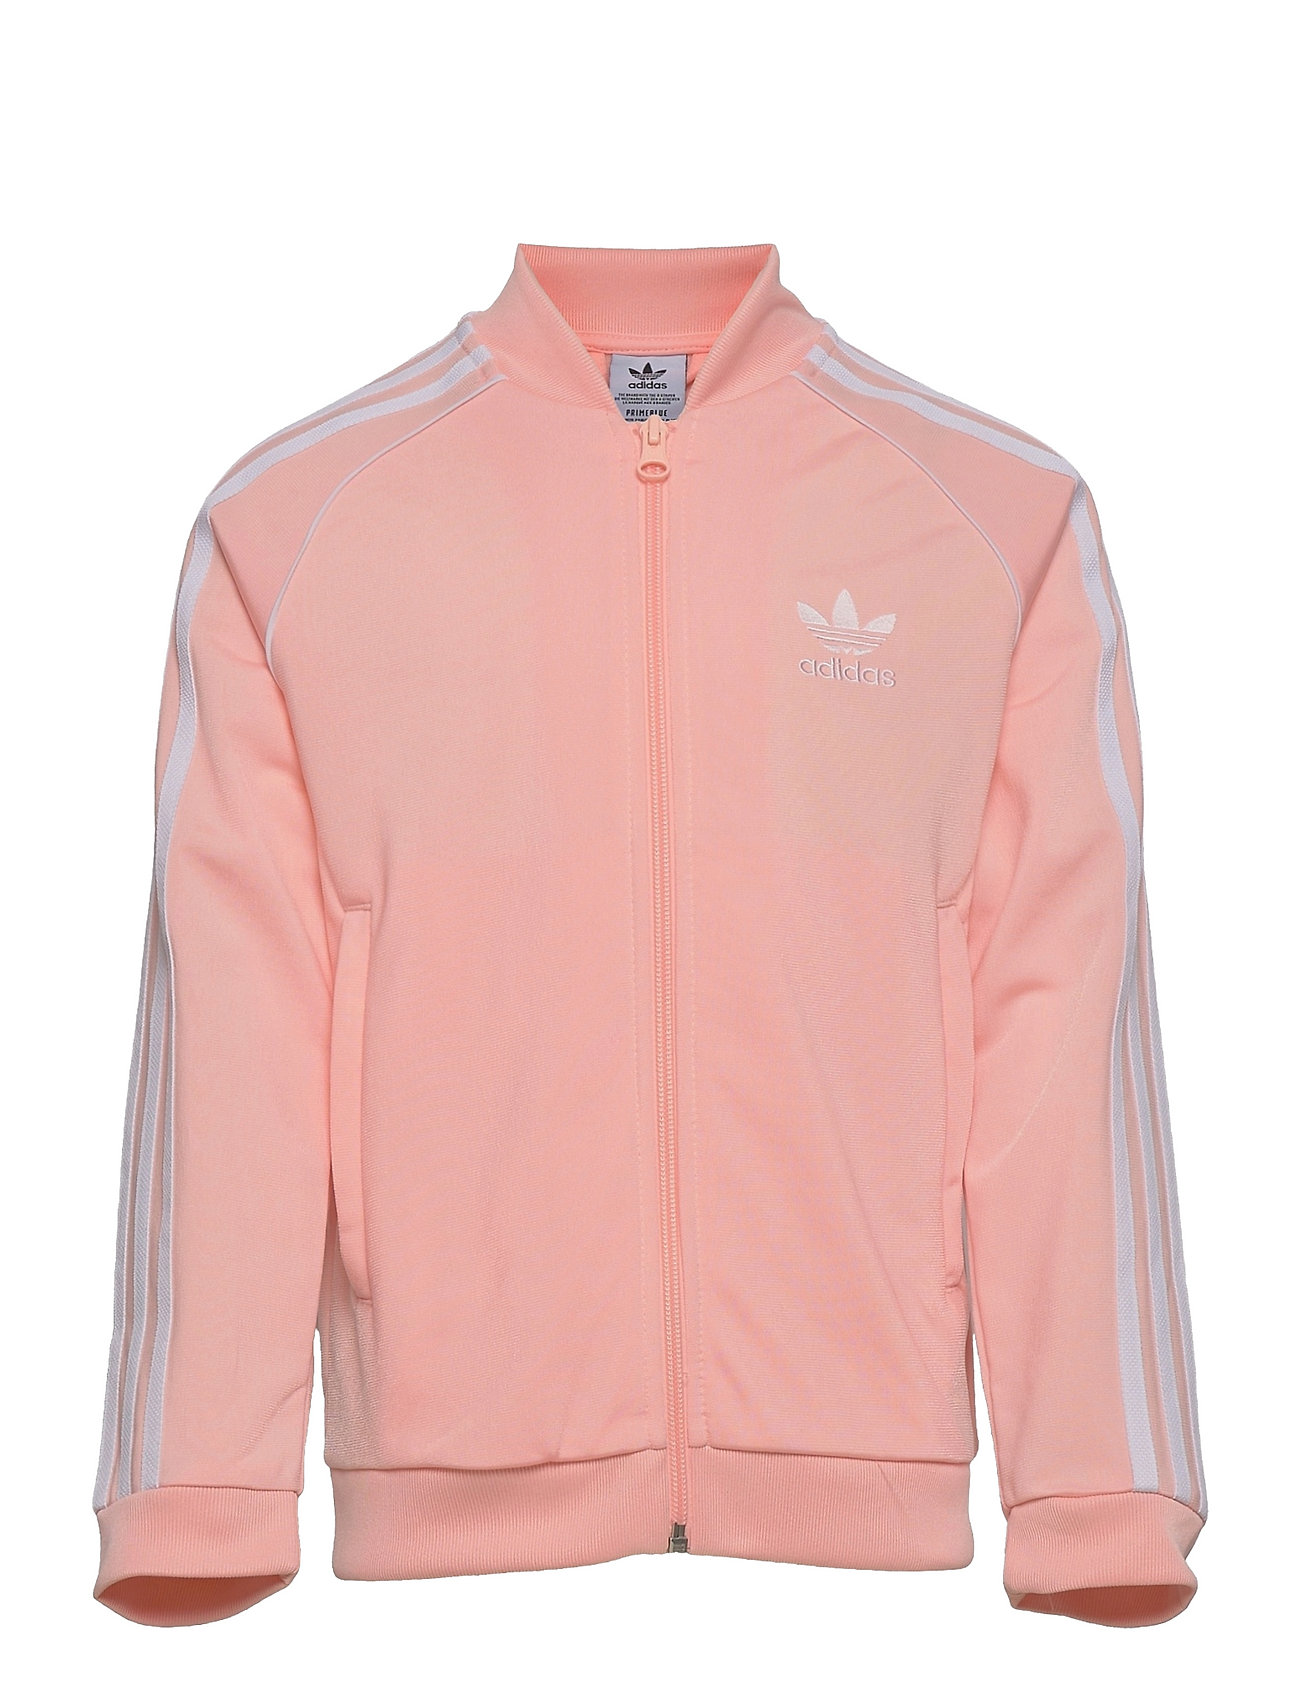 Adicolor Superstar Track Jacket Svetari Collegepaita Vaaleanpunainen Adidas Originals, adidas Originals